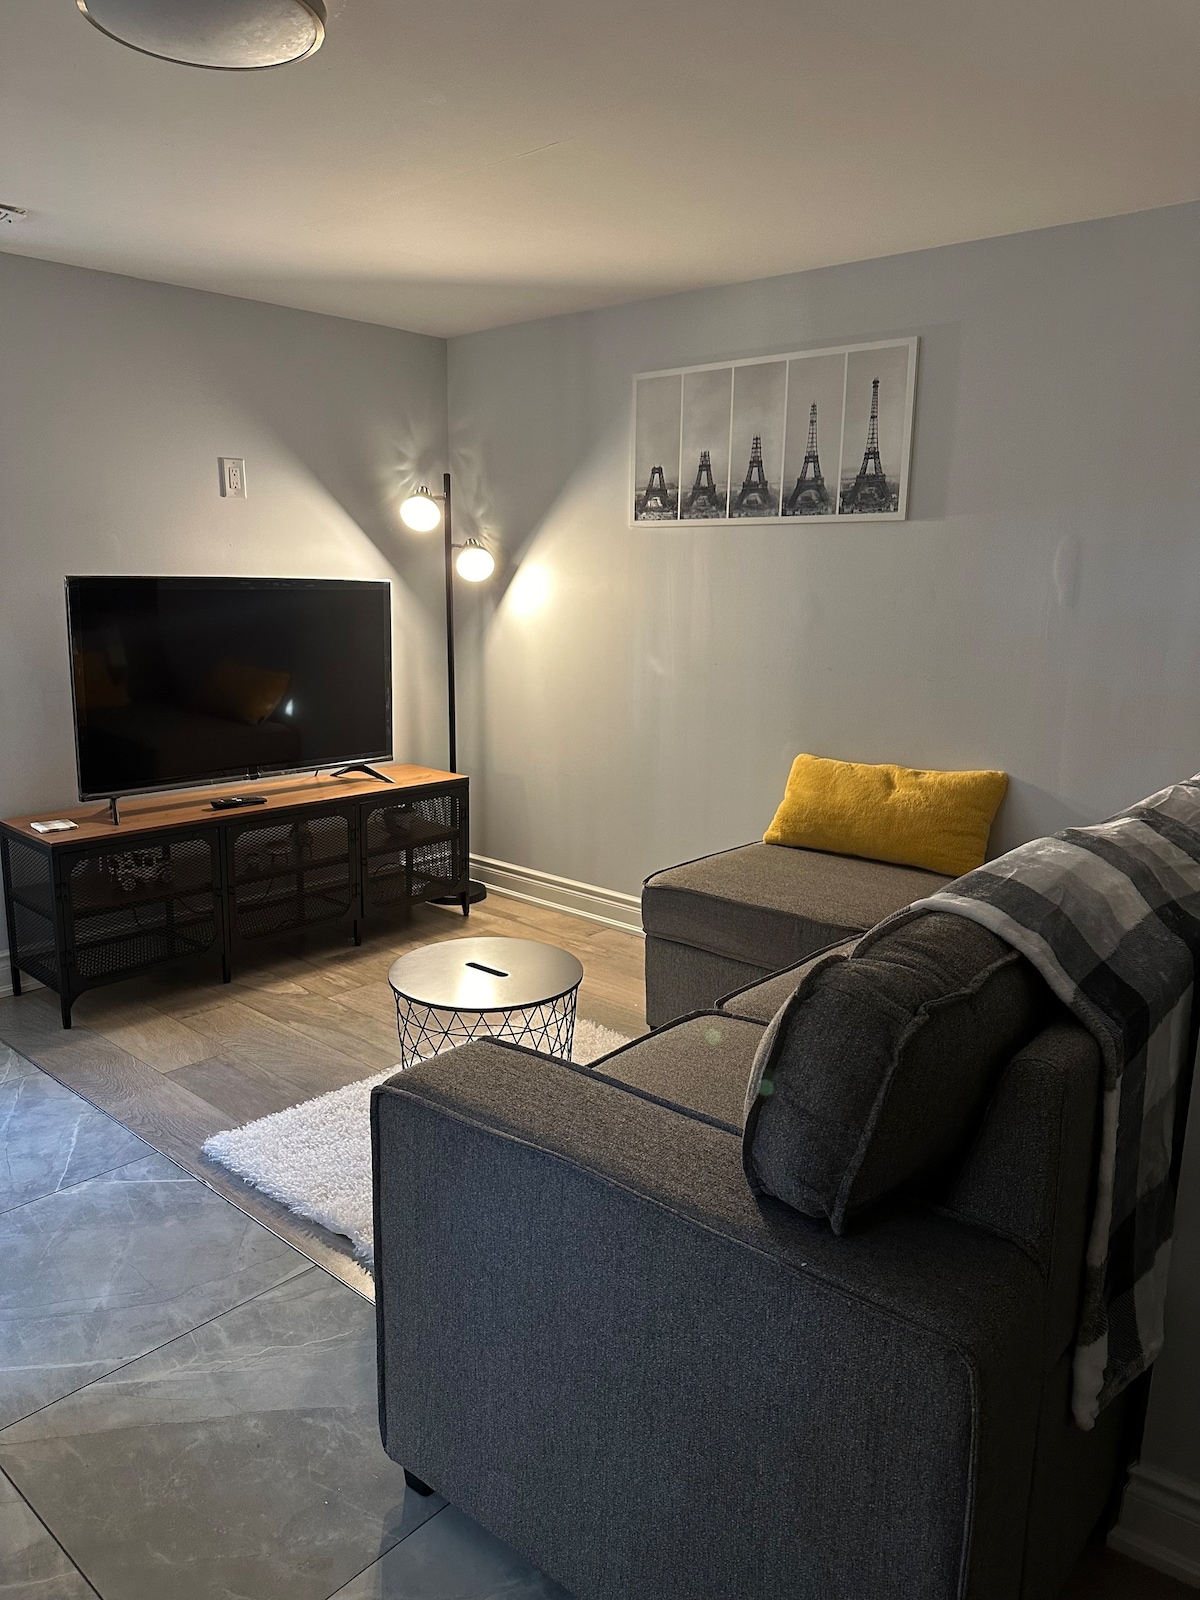 Clean & cozy basement apartment